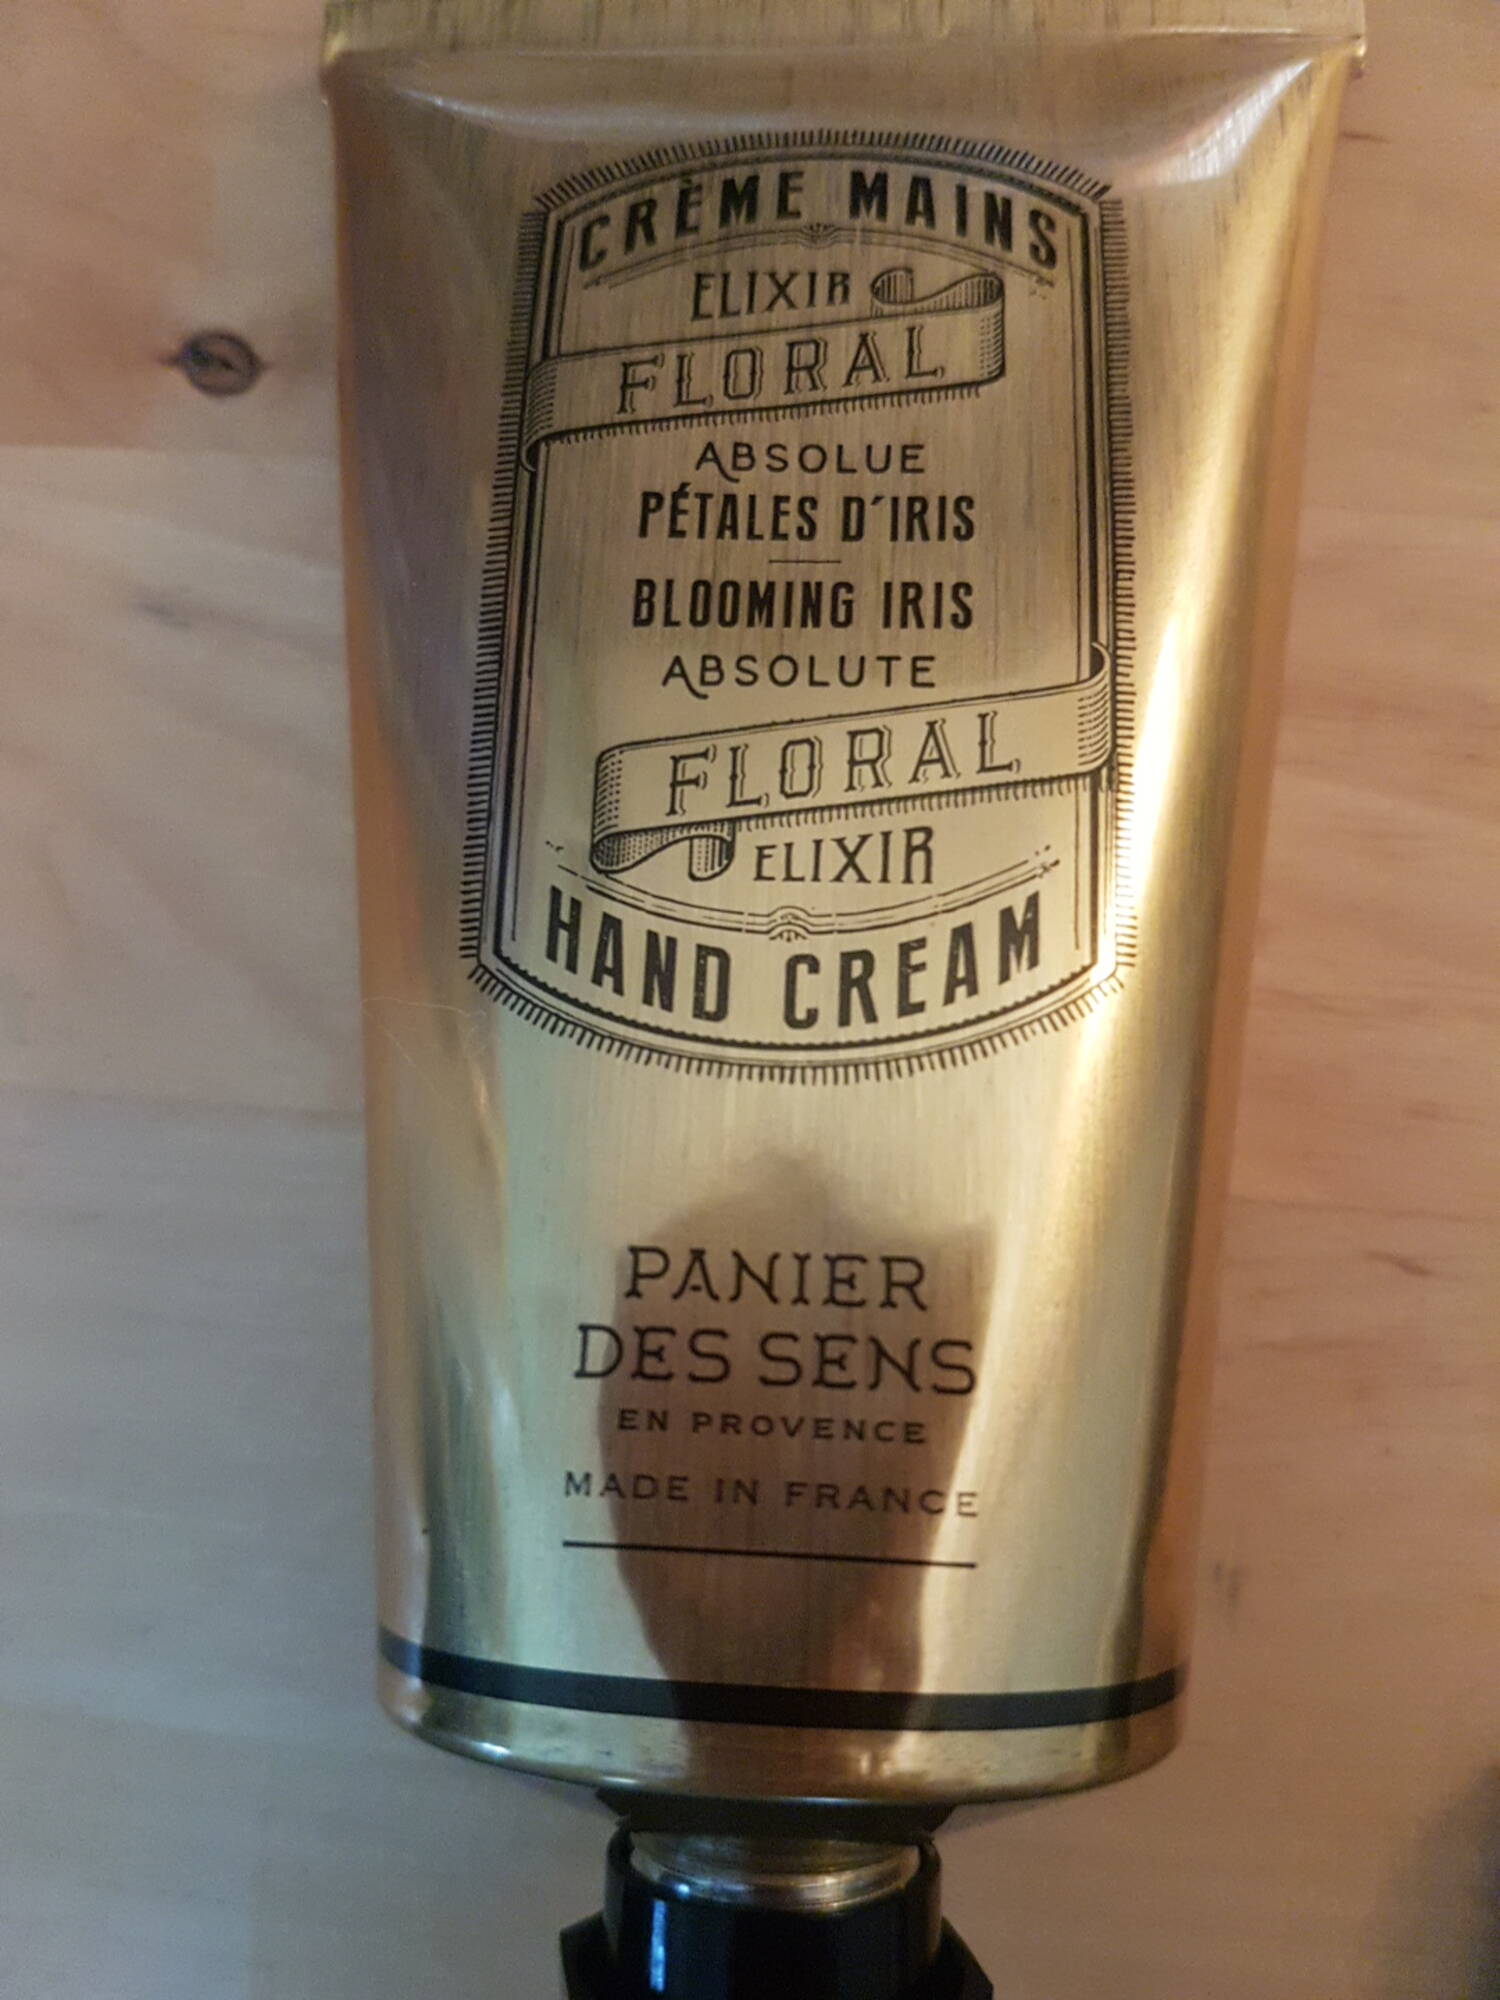 PANIER DES SENS - Elixir floral absolue pétales d'iris - Crème mains